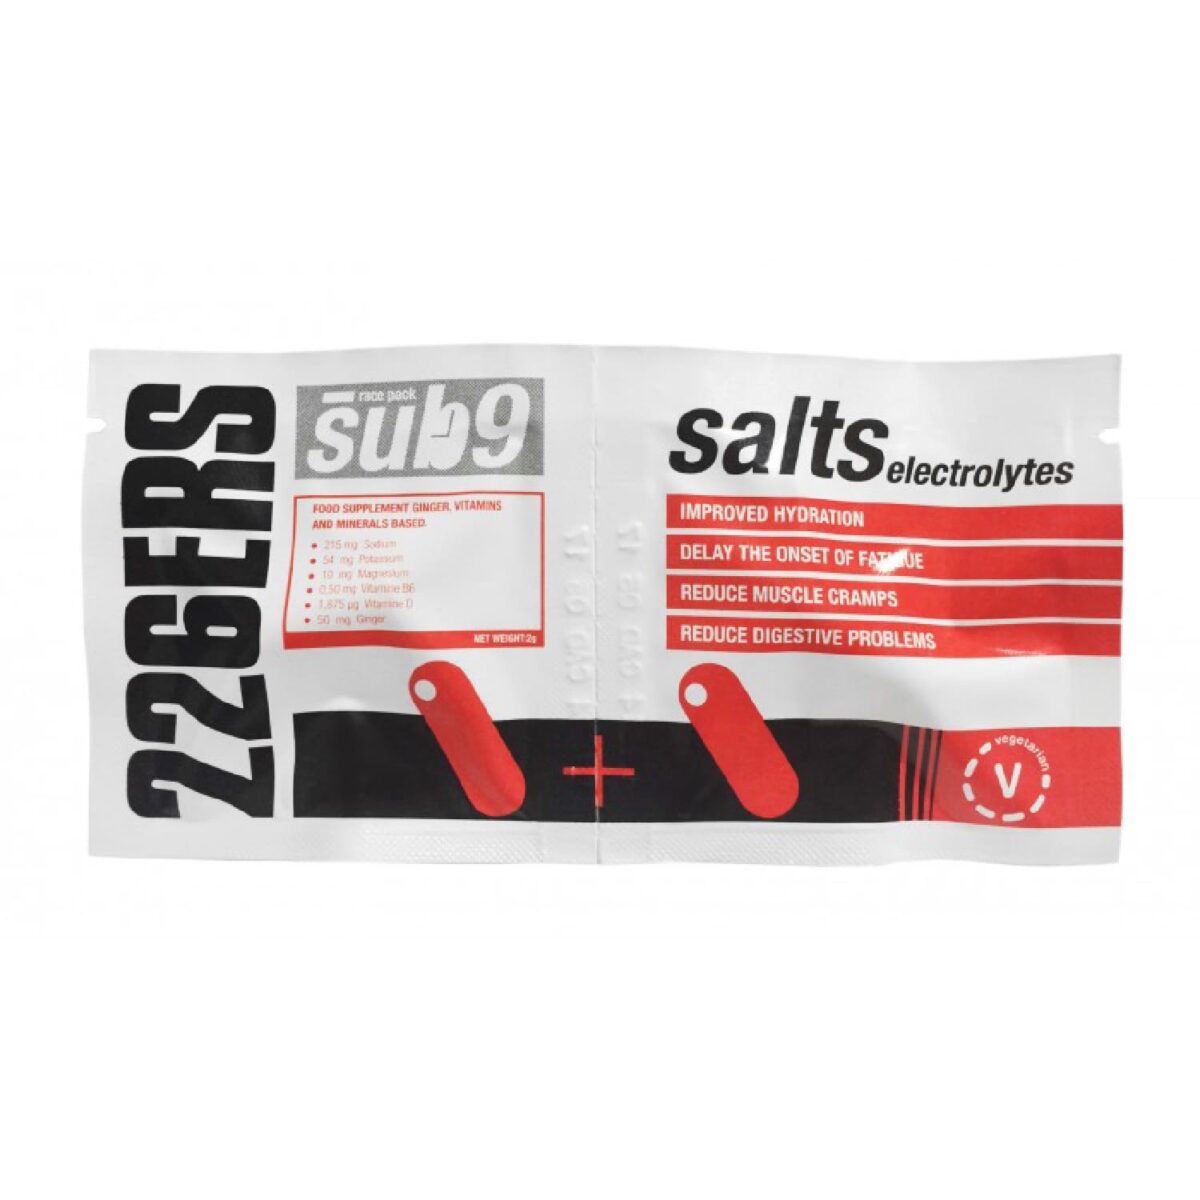 226ers_salt electrolytes